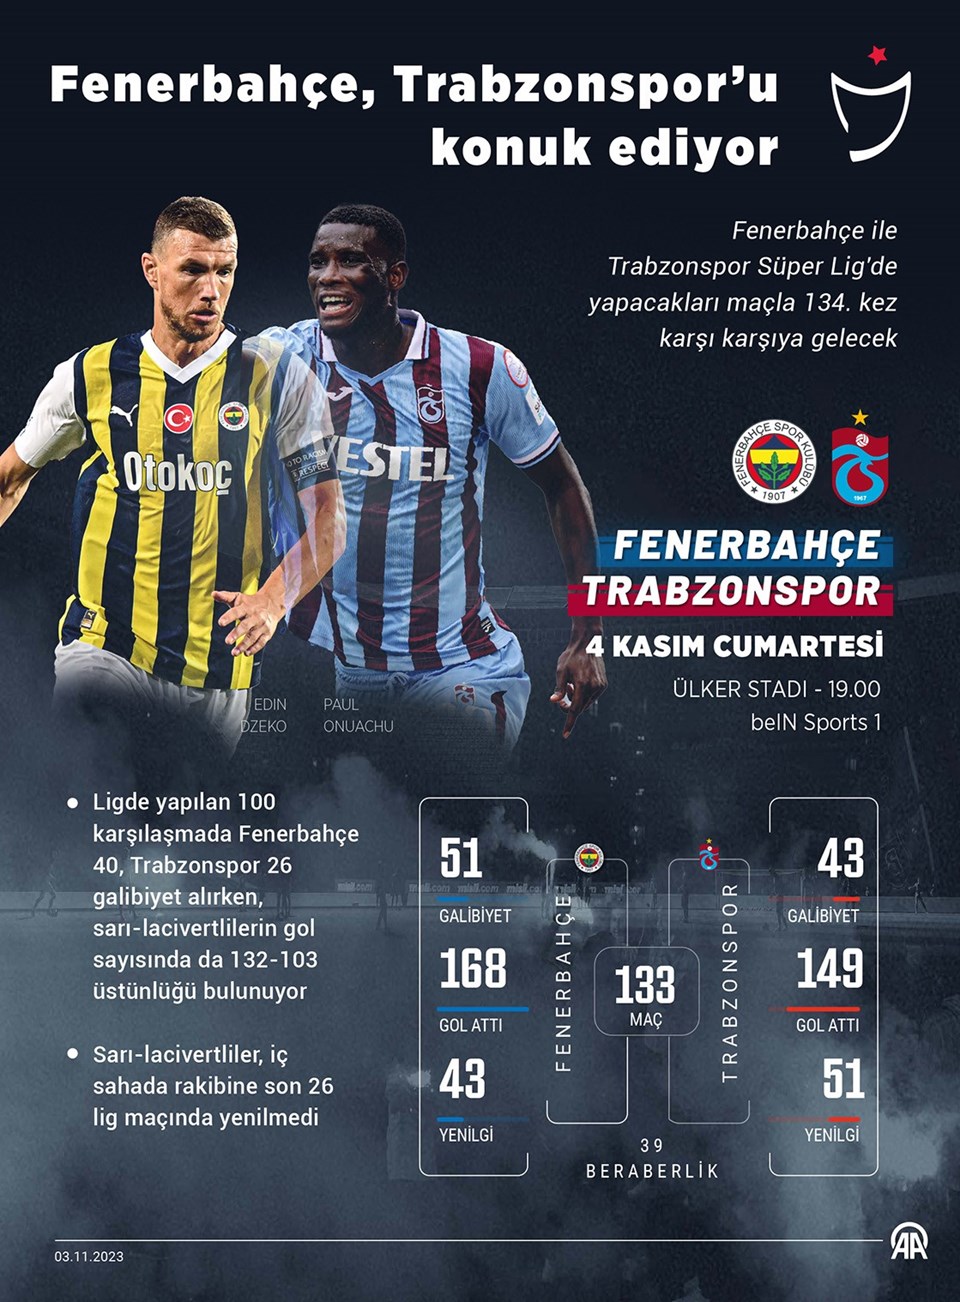 Kadıköy'de Fenerbahçe-Trabzonspor derbisi: 11'ler belli oldu - 1